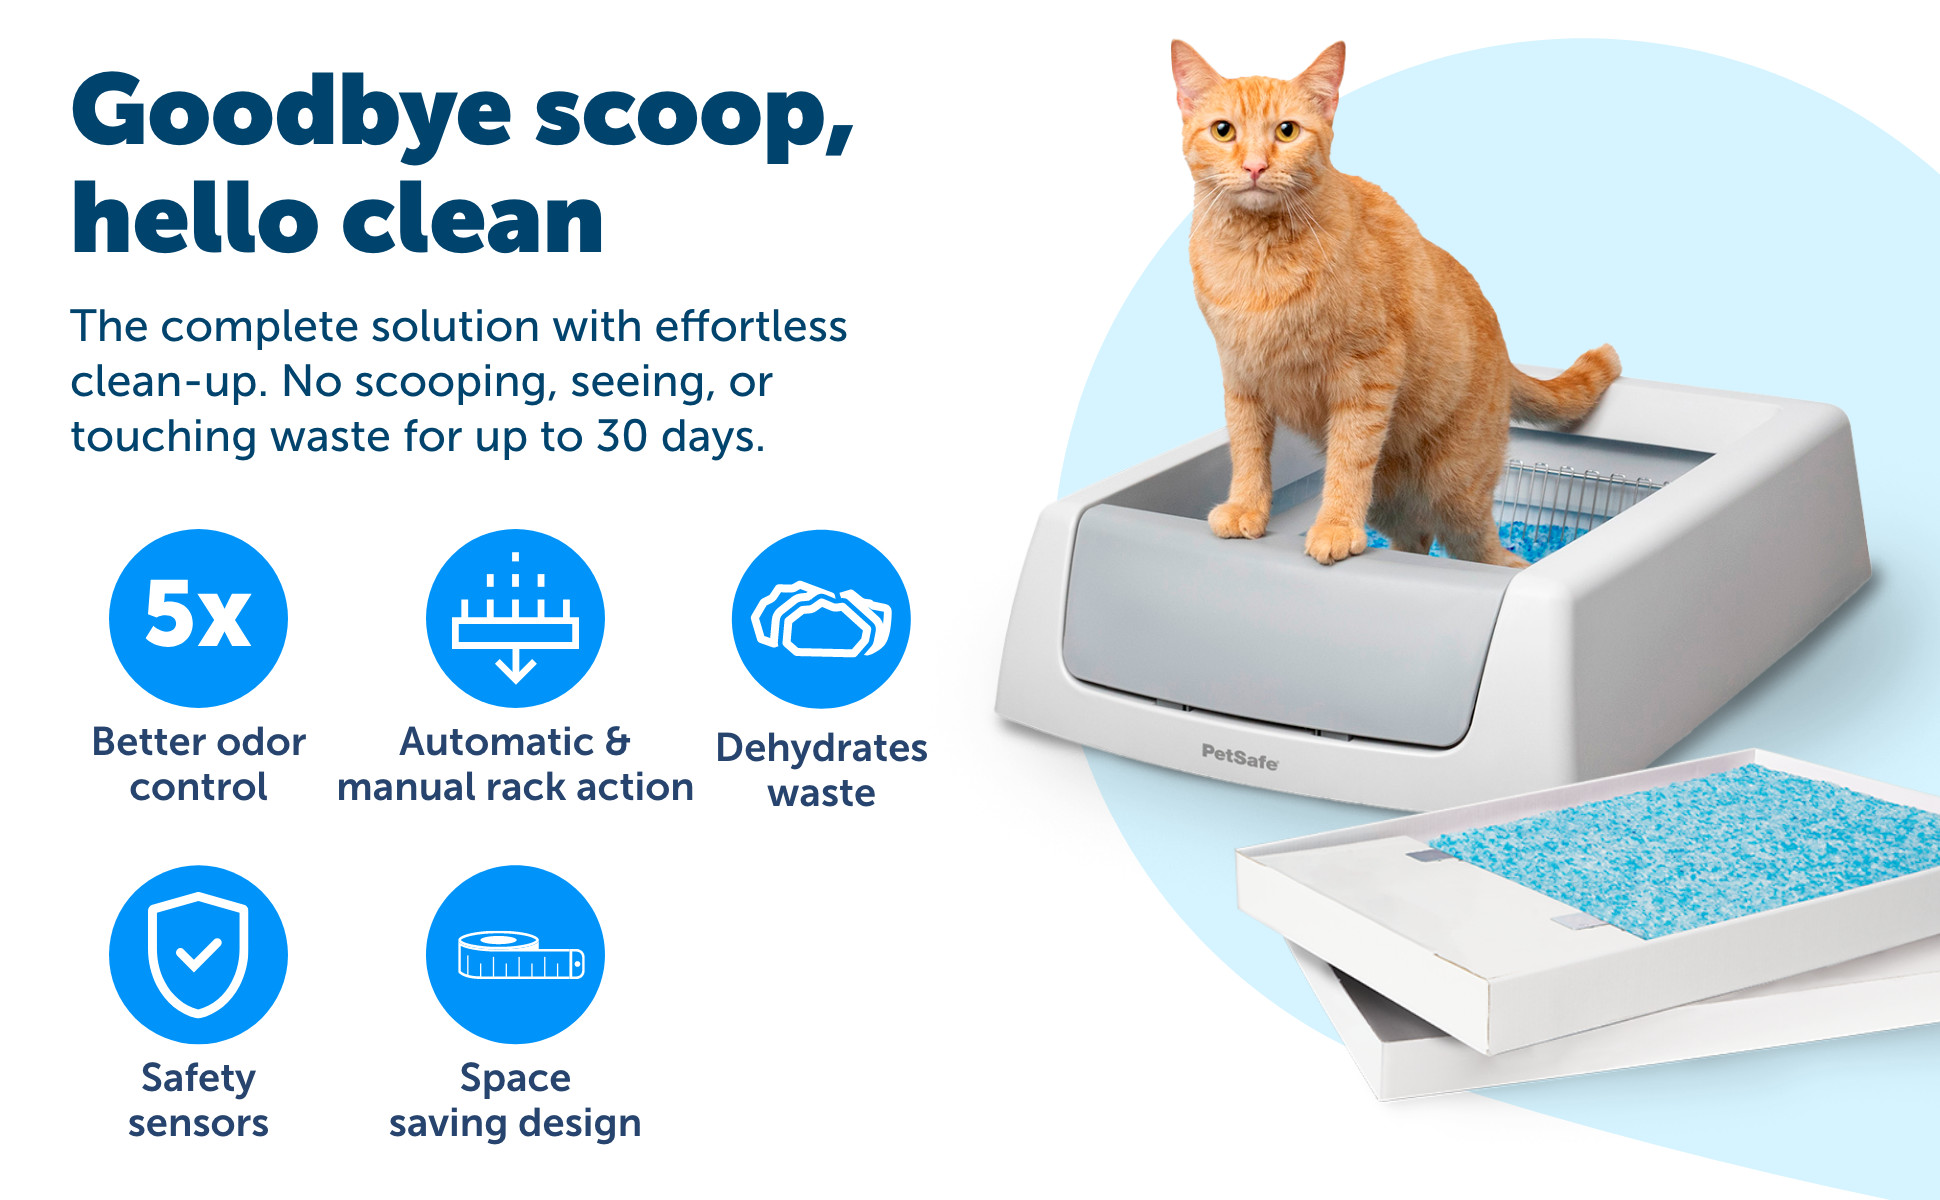 ScoopFree by PetSafe Smart Self-Cleaning Cat Litter Box